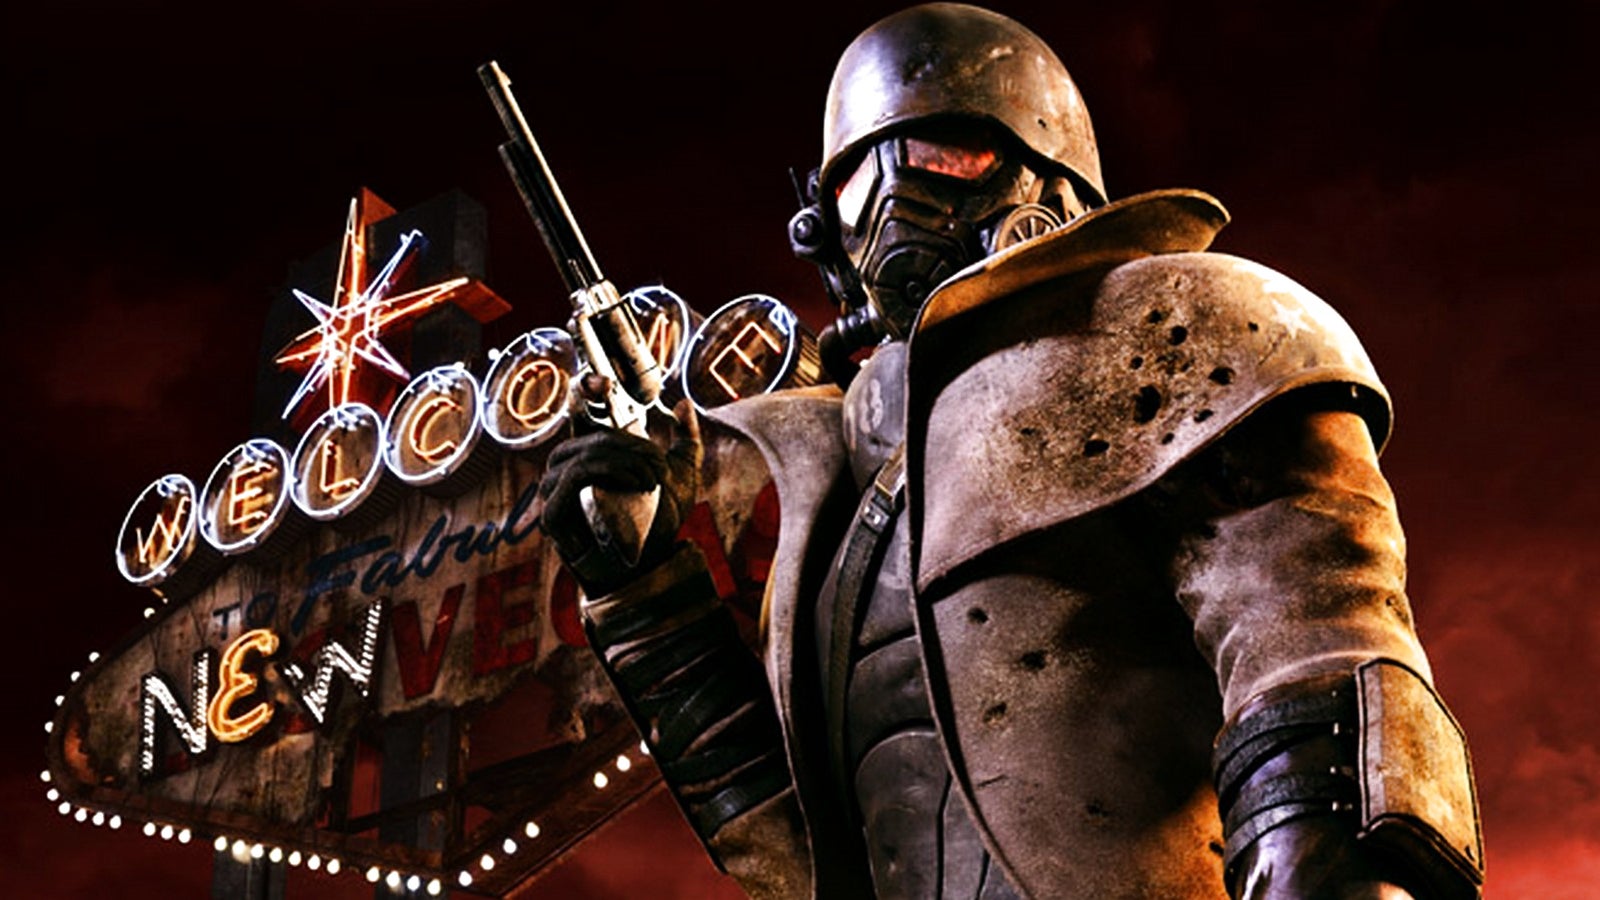 Bilder zu Kommt Fallout: New Vegas 2? Xbox und Obsidian angeblich in "sehr frühen" Gesprächen darüber